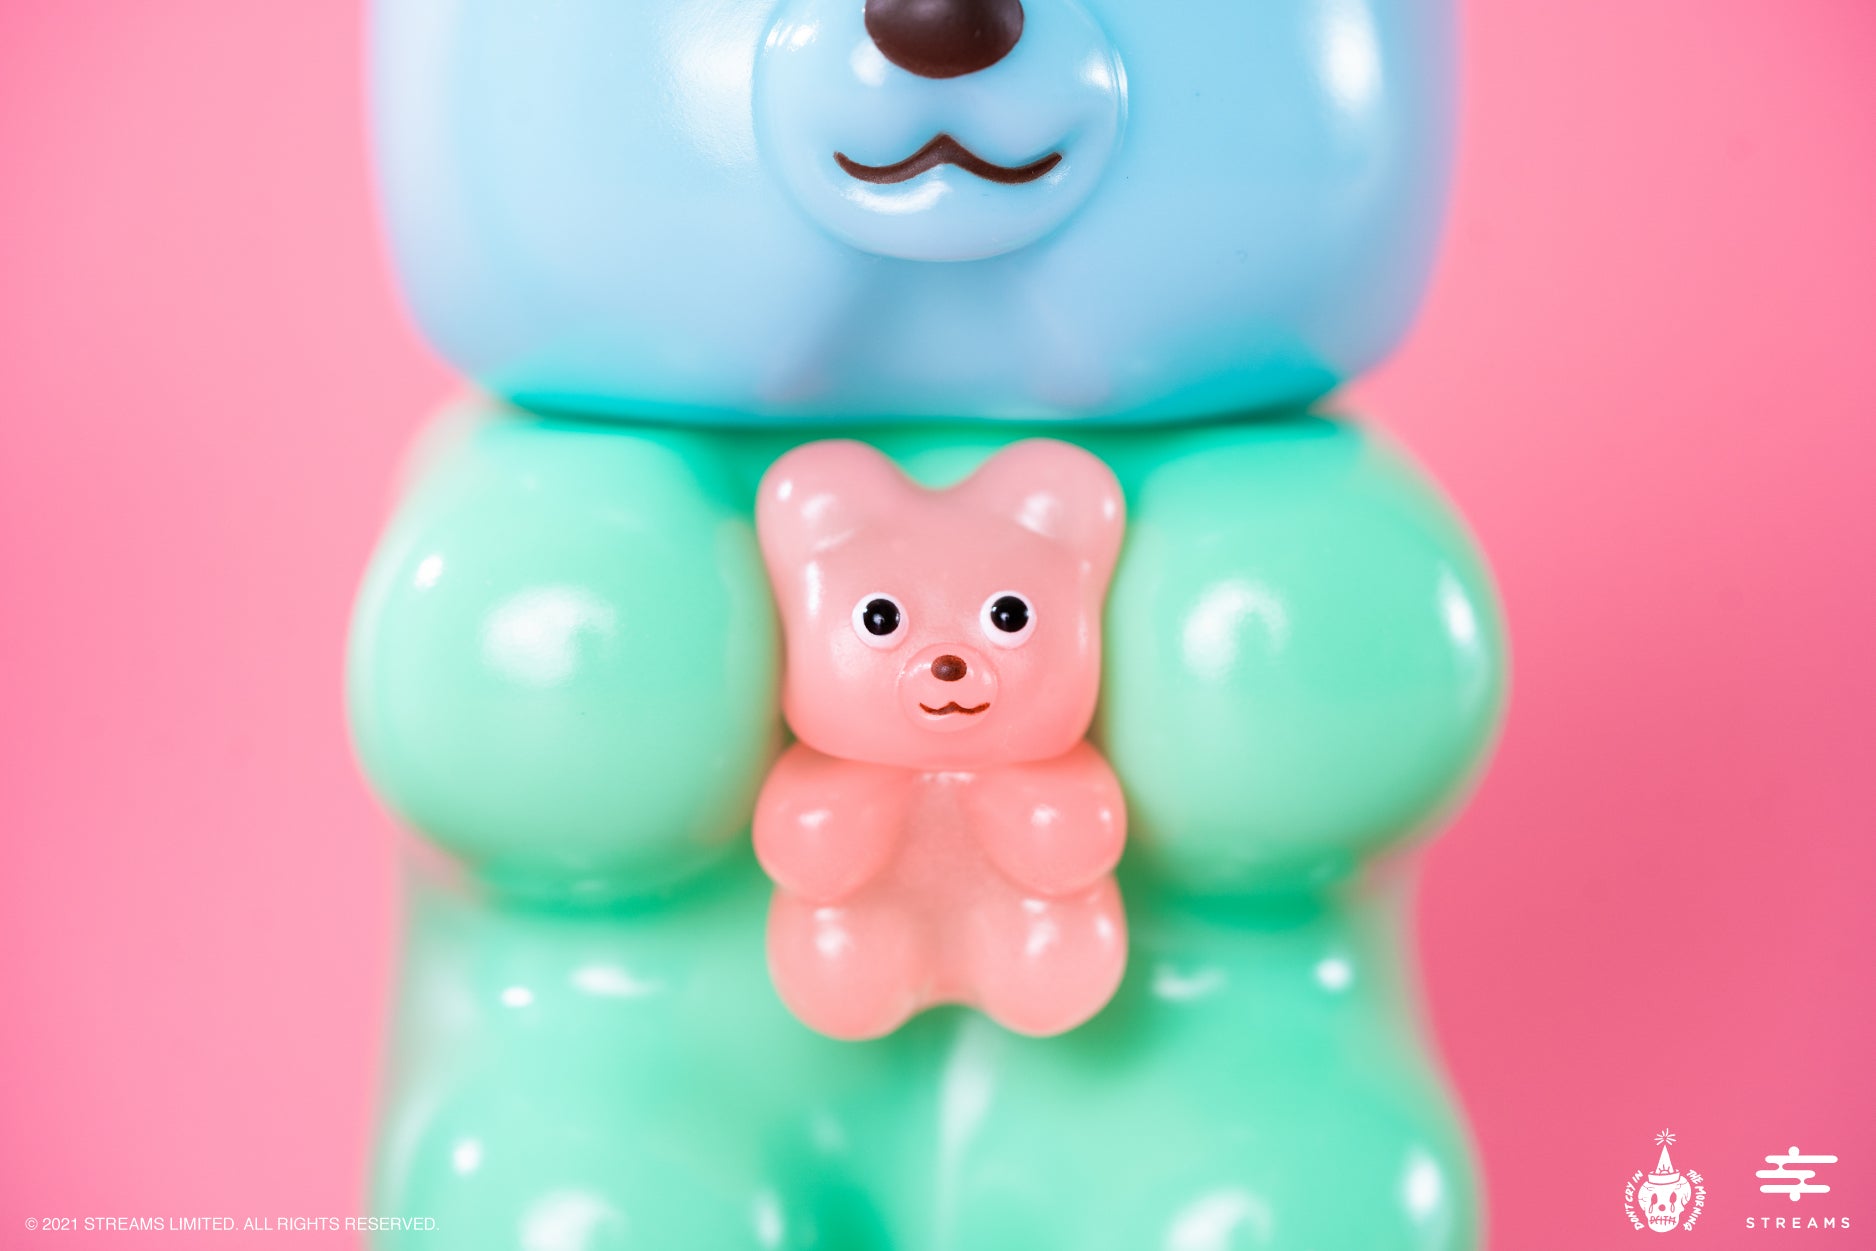 DCITM Hugger & Gummy Fuku Bear Milky Pastel Limited Edition